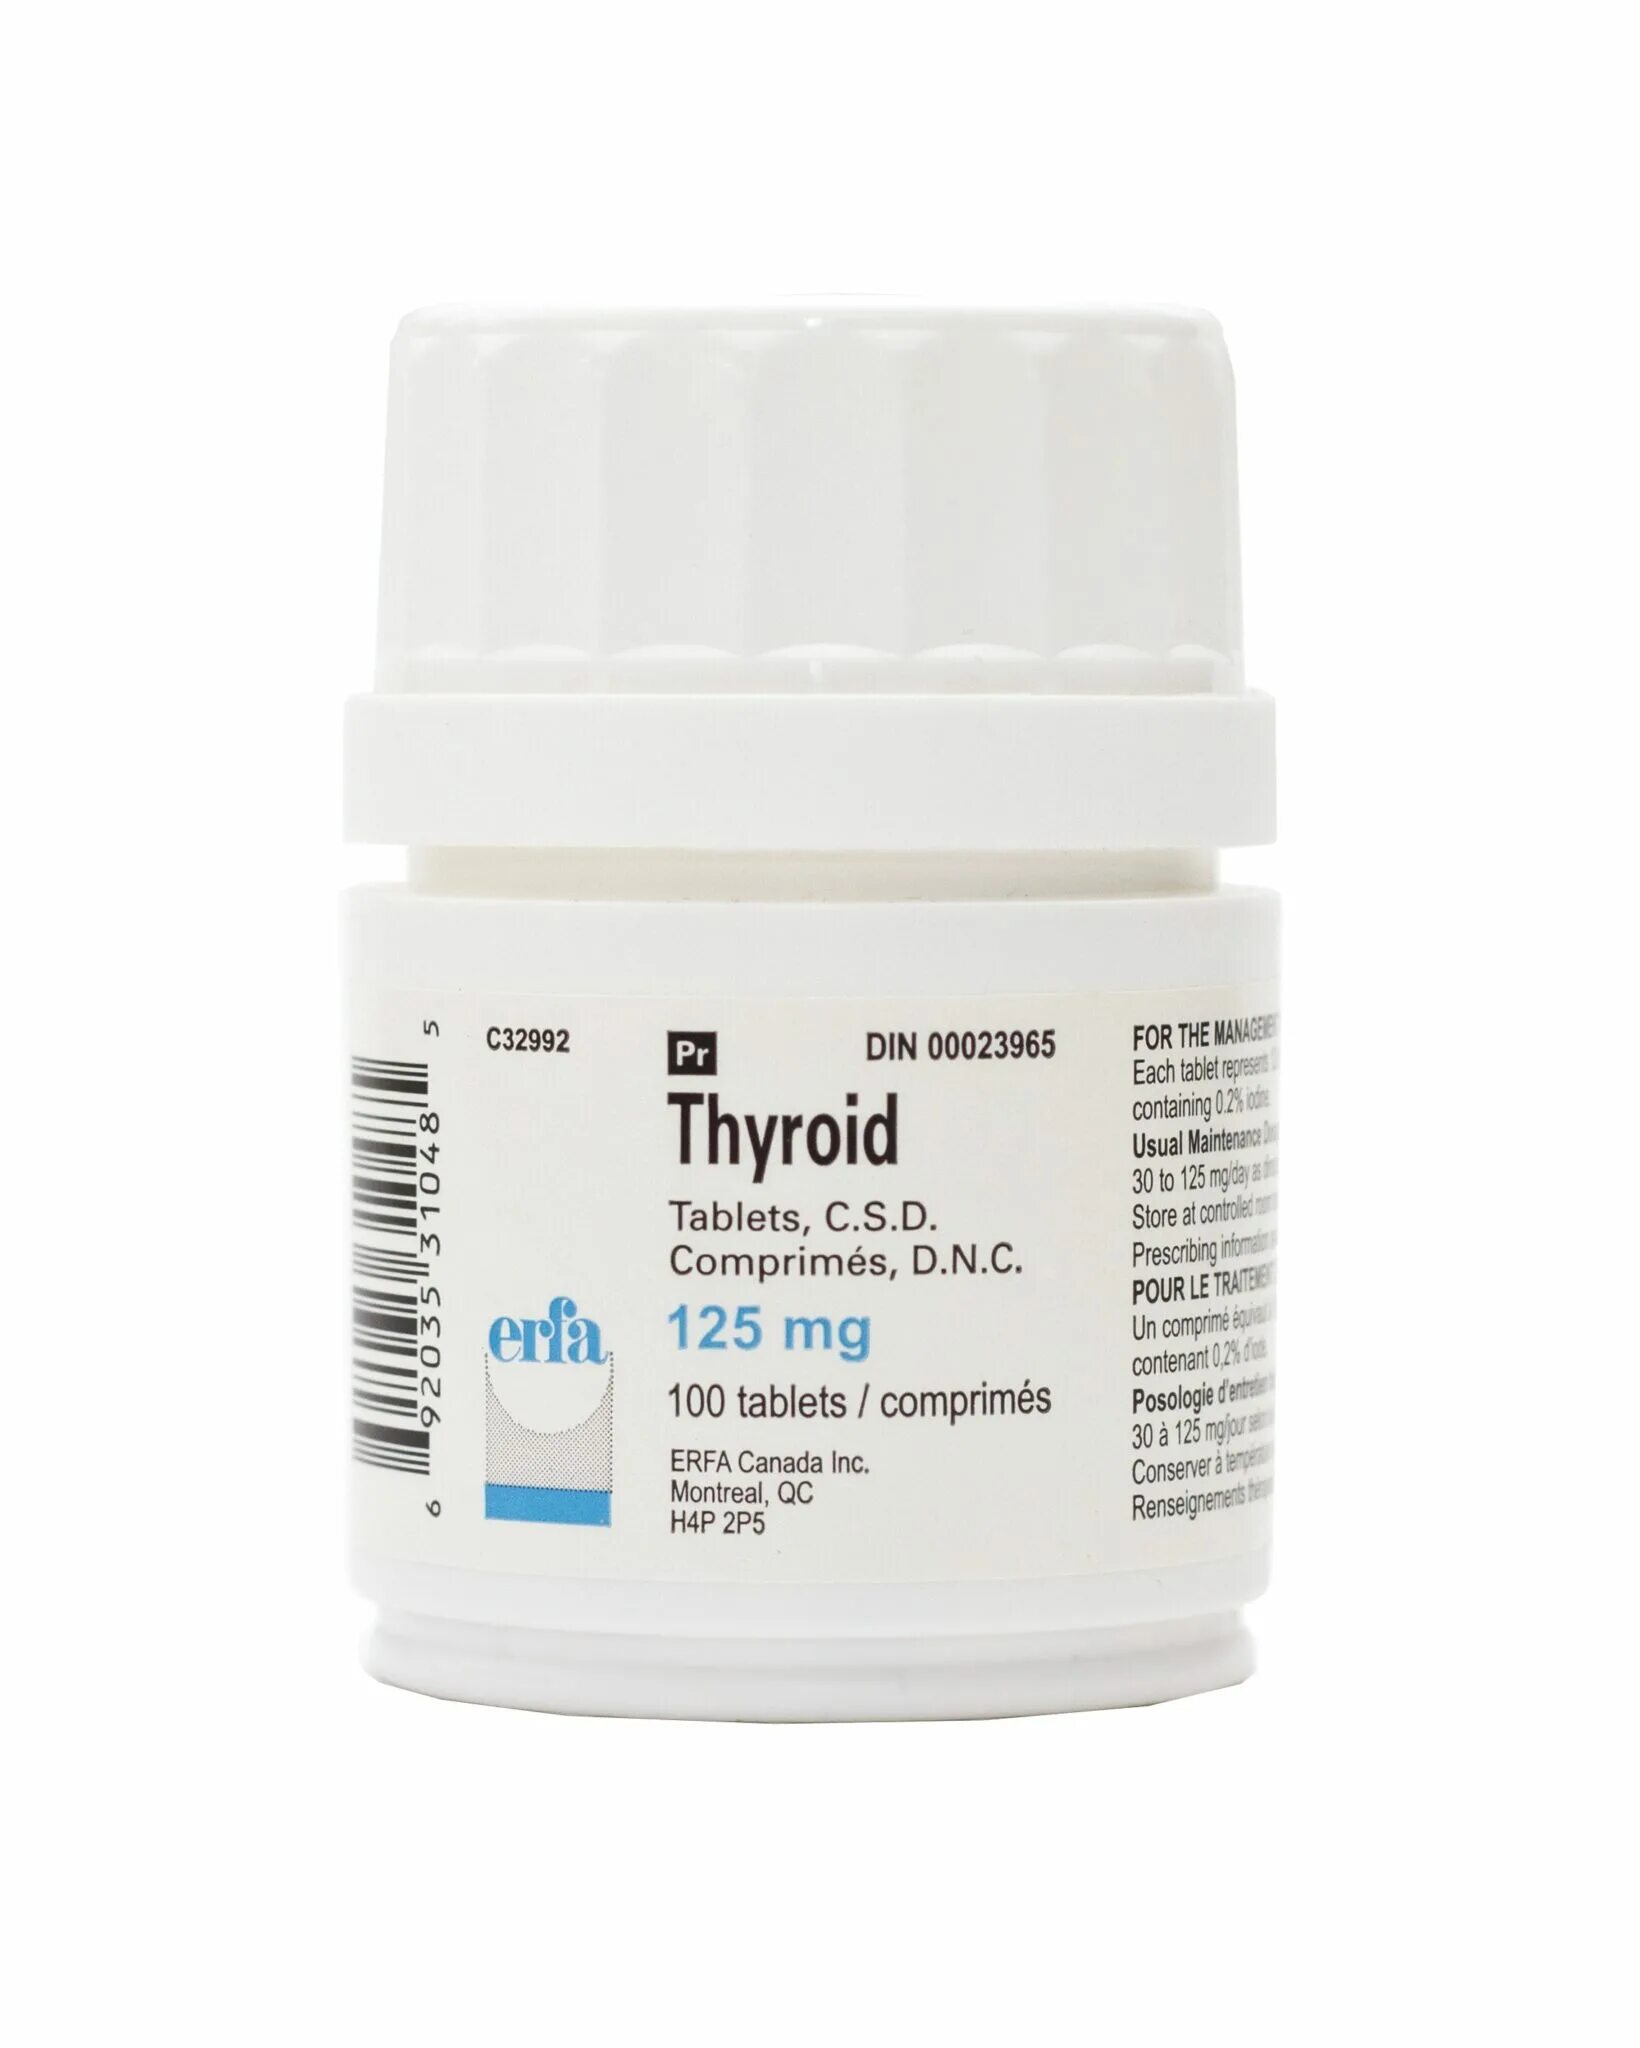 Thyroid-s таблетки 500 шт. Тироид. Армор Тироид. АРМОУР, Армор Тироид / Armour Thyroid (levothyroxine, Liothyronine).